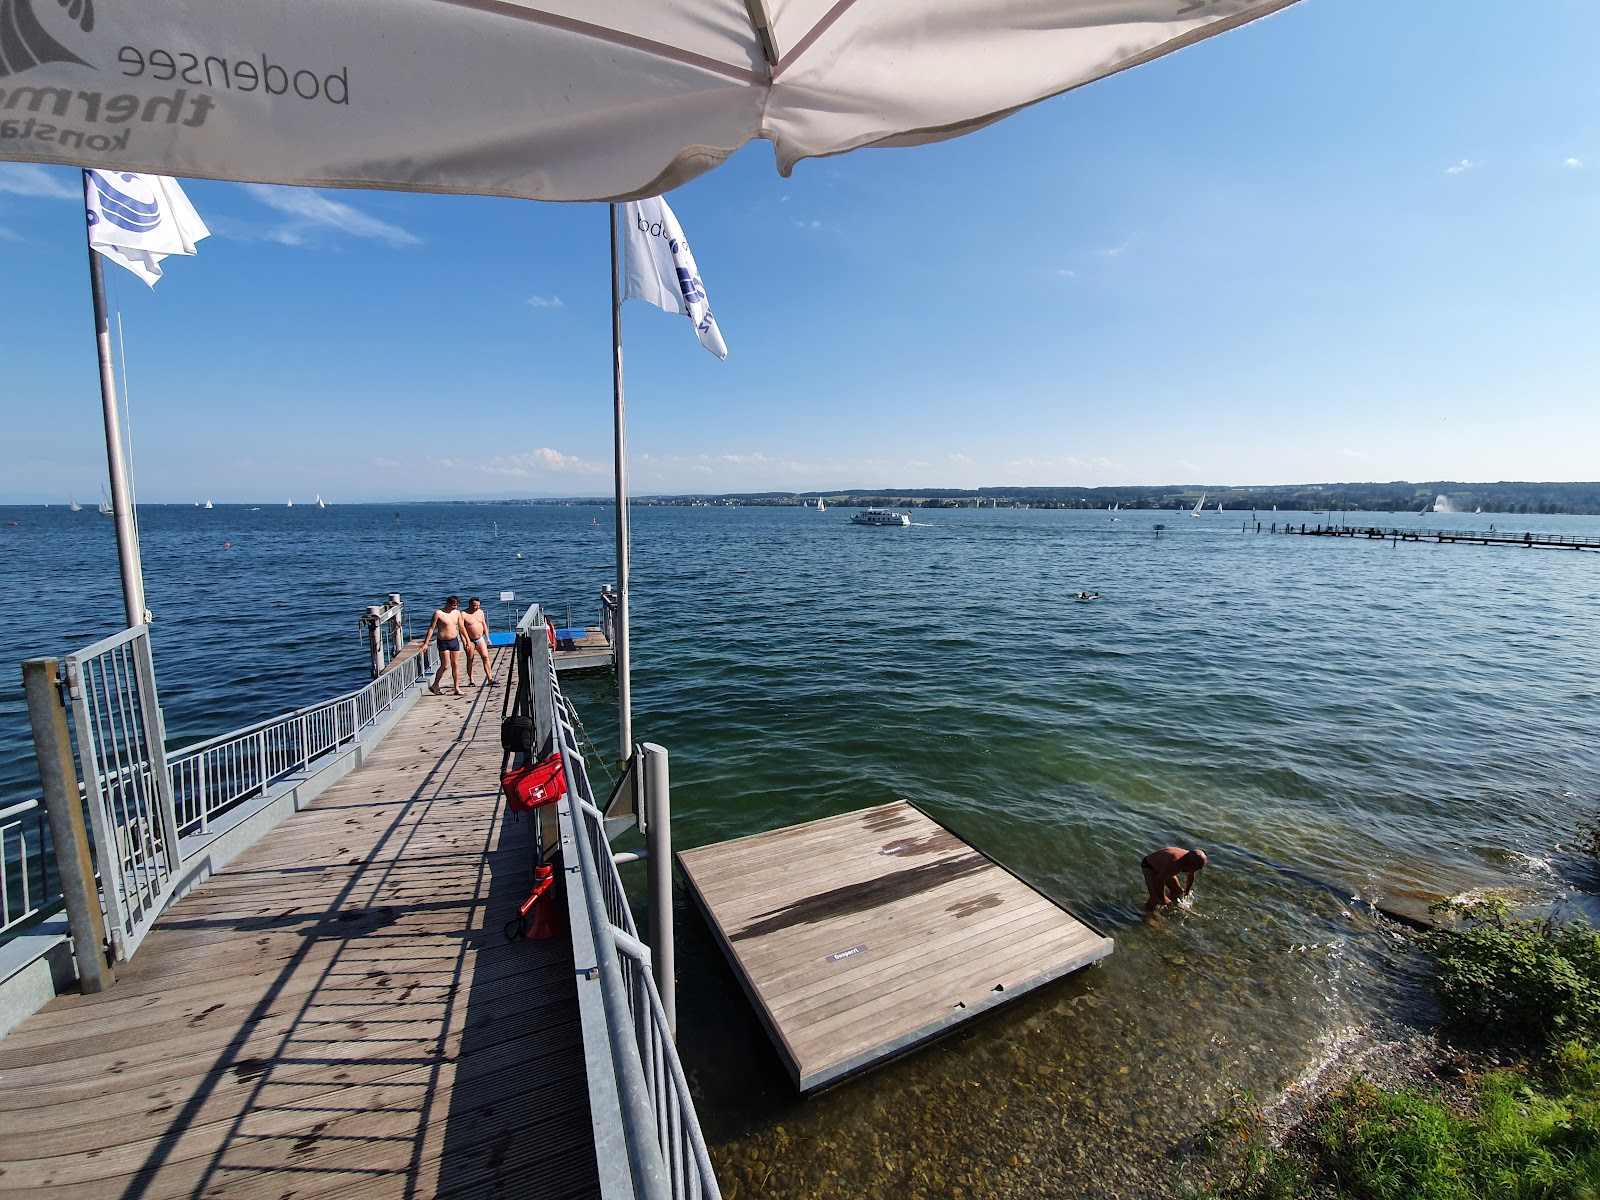 Fotografie cu Bodensee-Therme Konstanz cu o suprafață de apa pură turcoaz